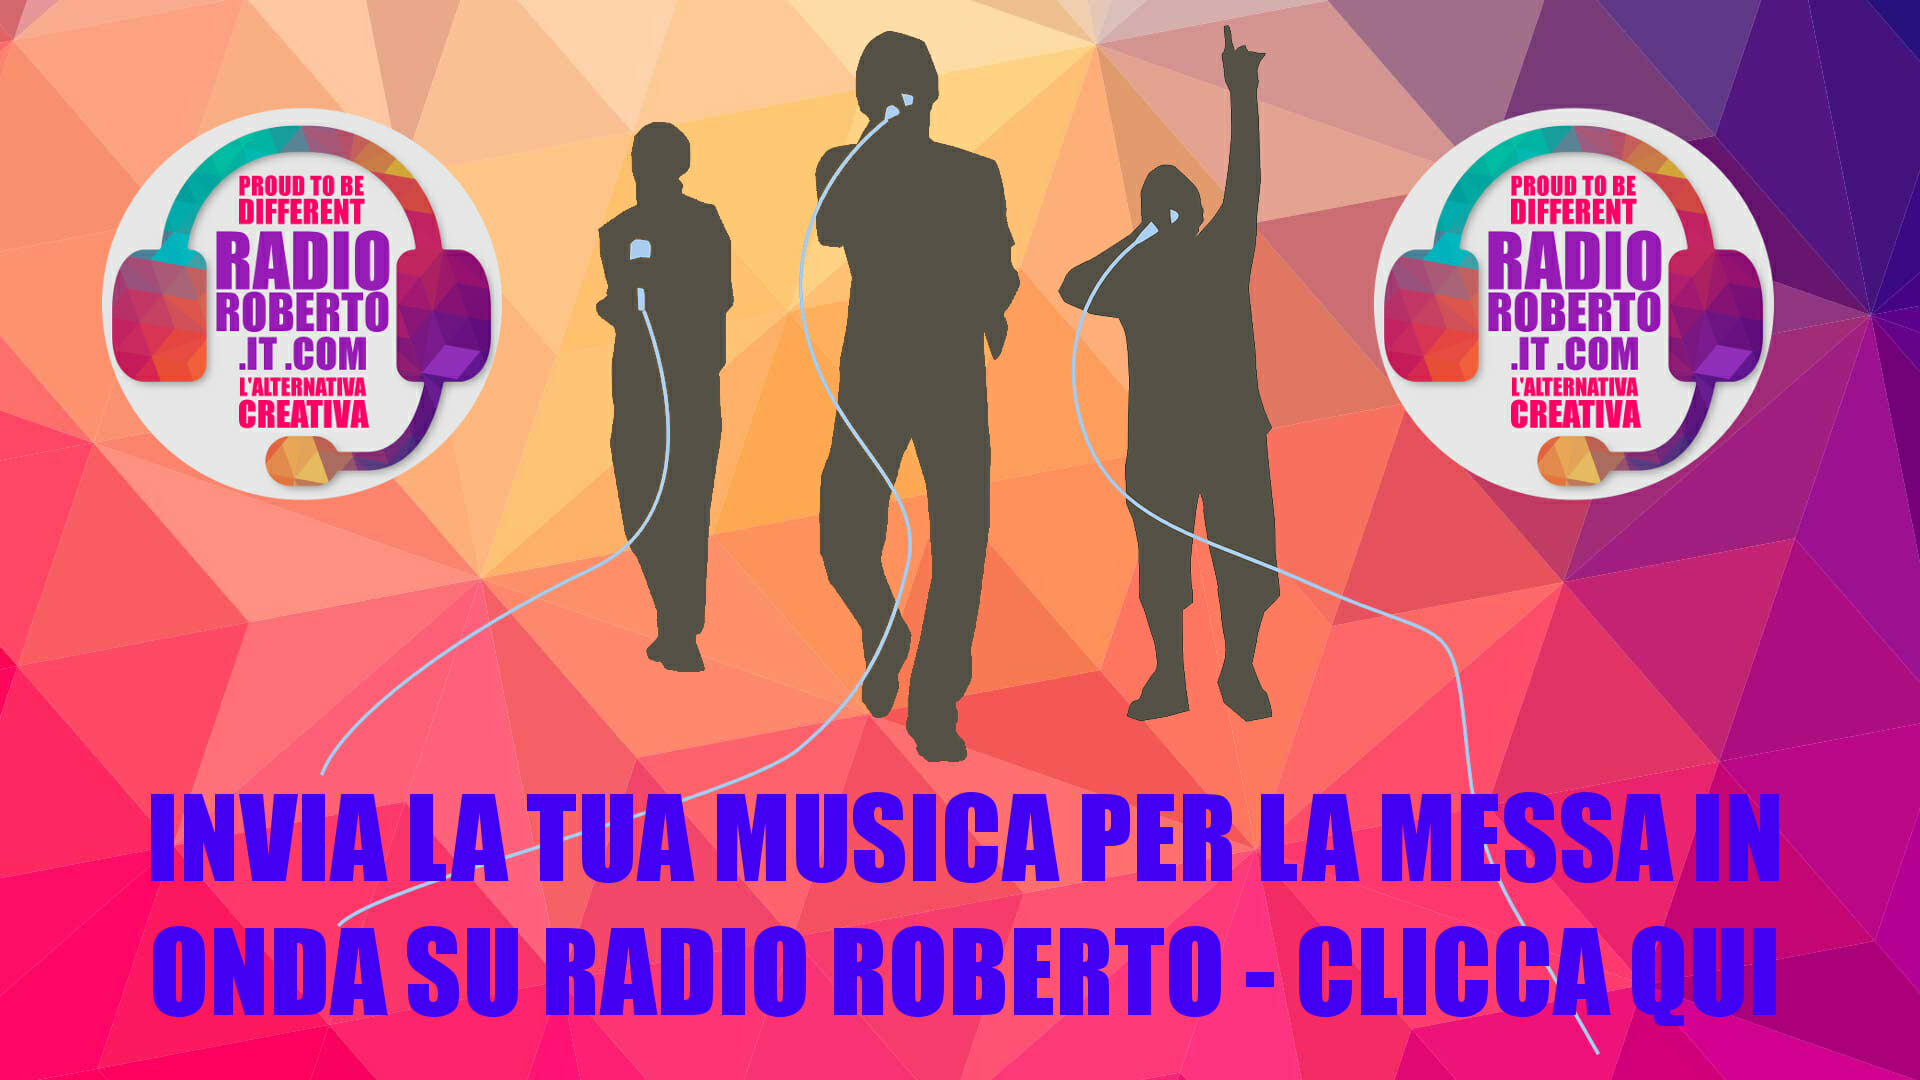 Invia la tua musica per la promozione radiofonica gratuita su Radio Roberto, la web radio n.1 in Italia per artisti emergenti indipendenti.